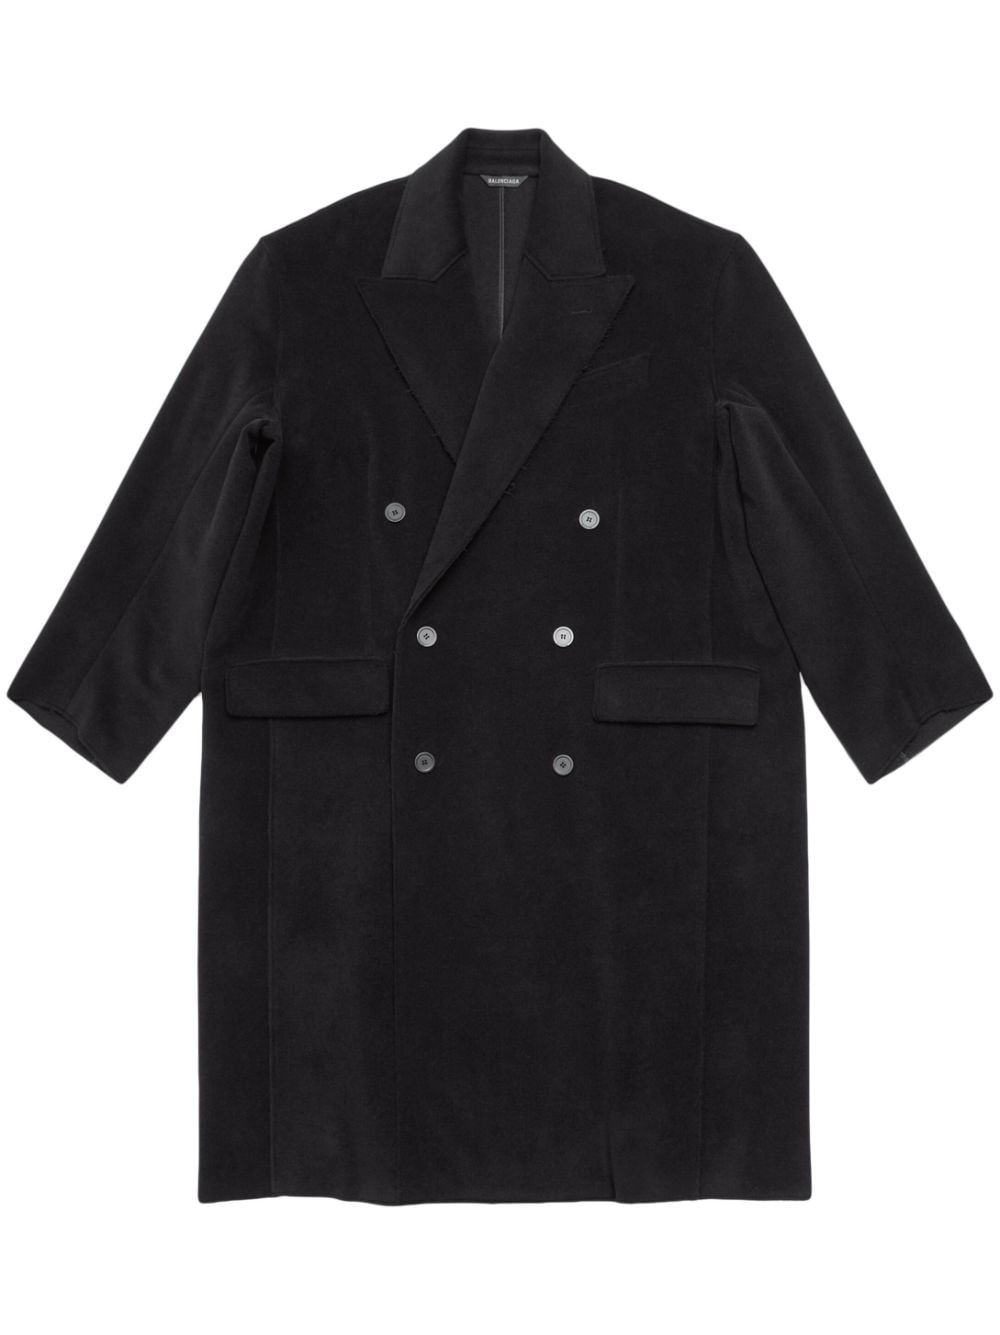 Balenciaga double-breasted virgin-wool coat - Black